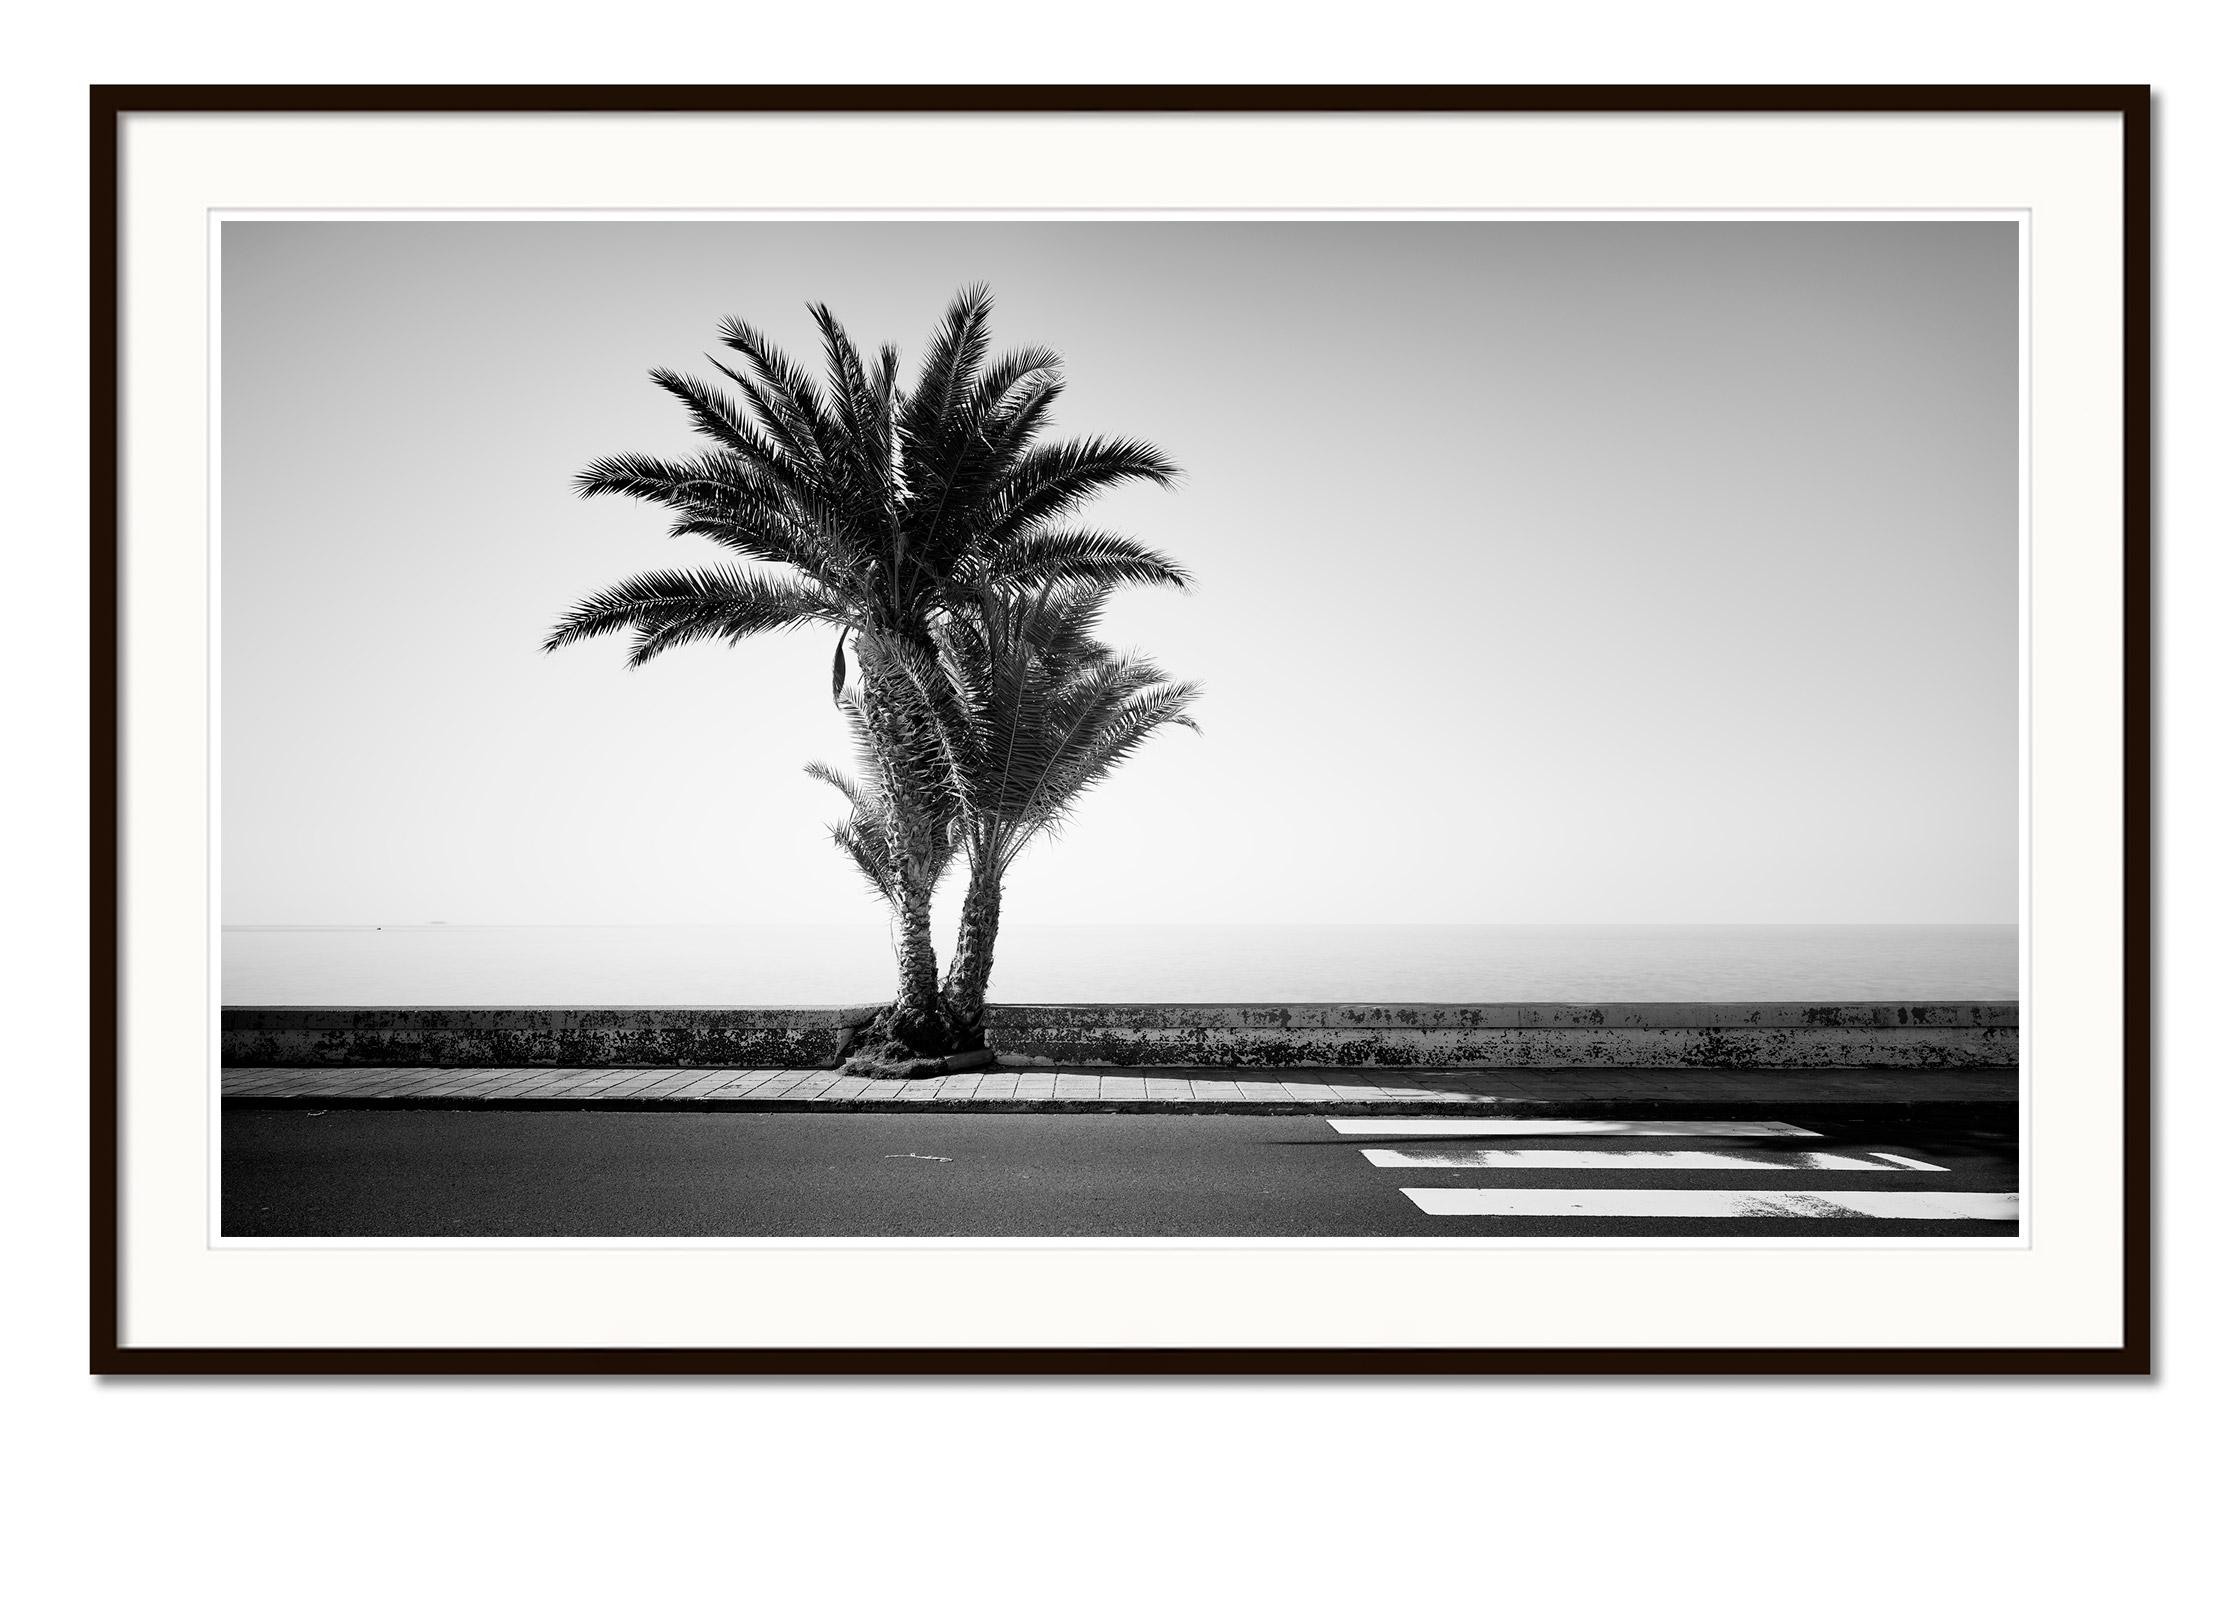 Palmen an der Straße, Portugal, Schwarz-Weiß-Fotografie, Landschaft (Grau), Landscape Photograph, von Gerald Berghammer